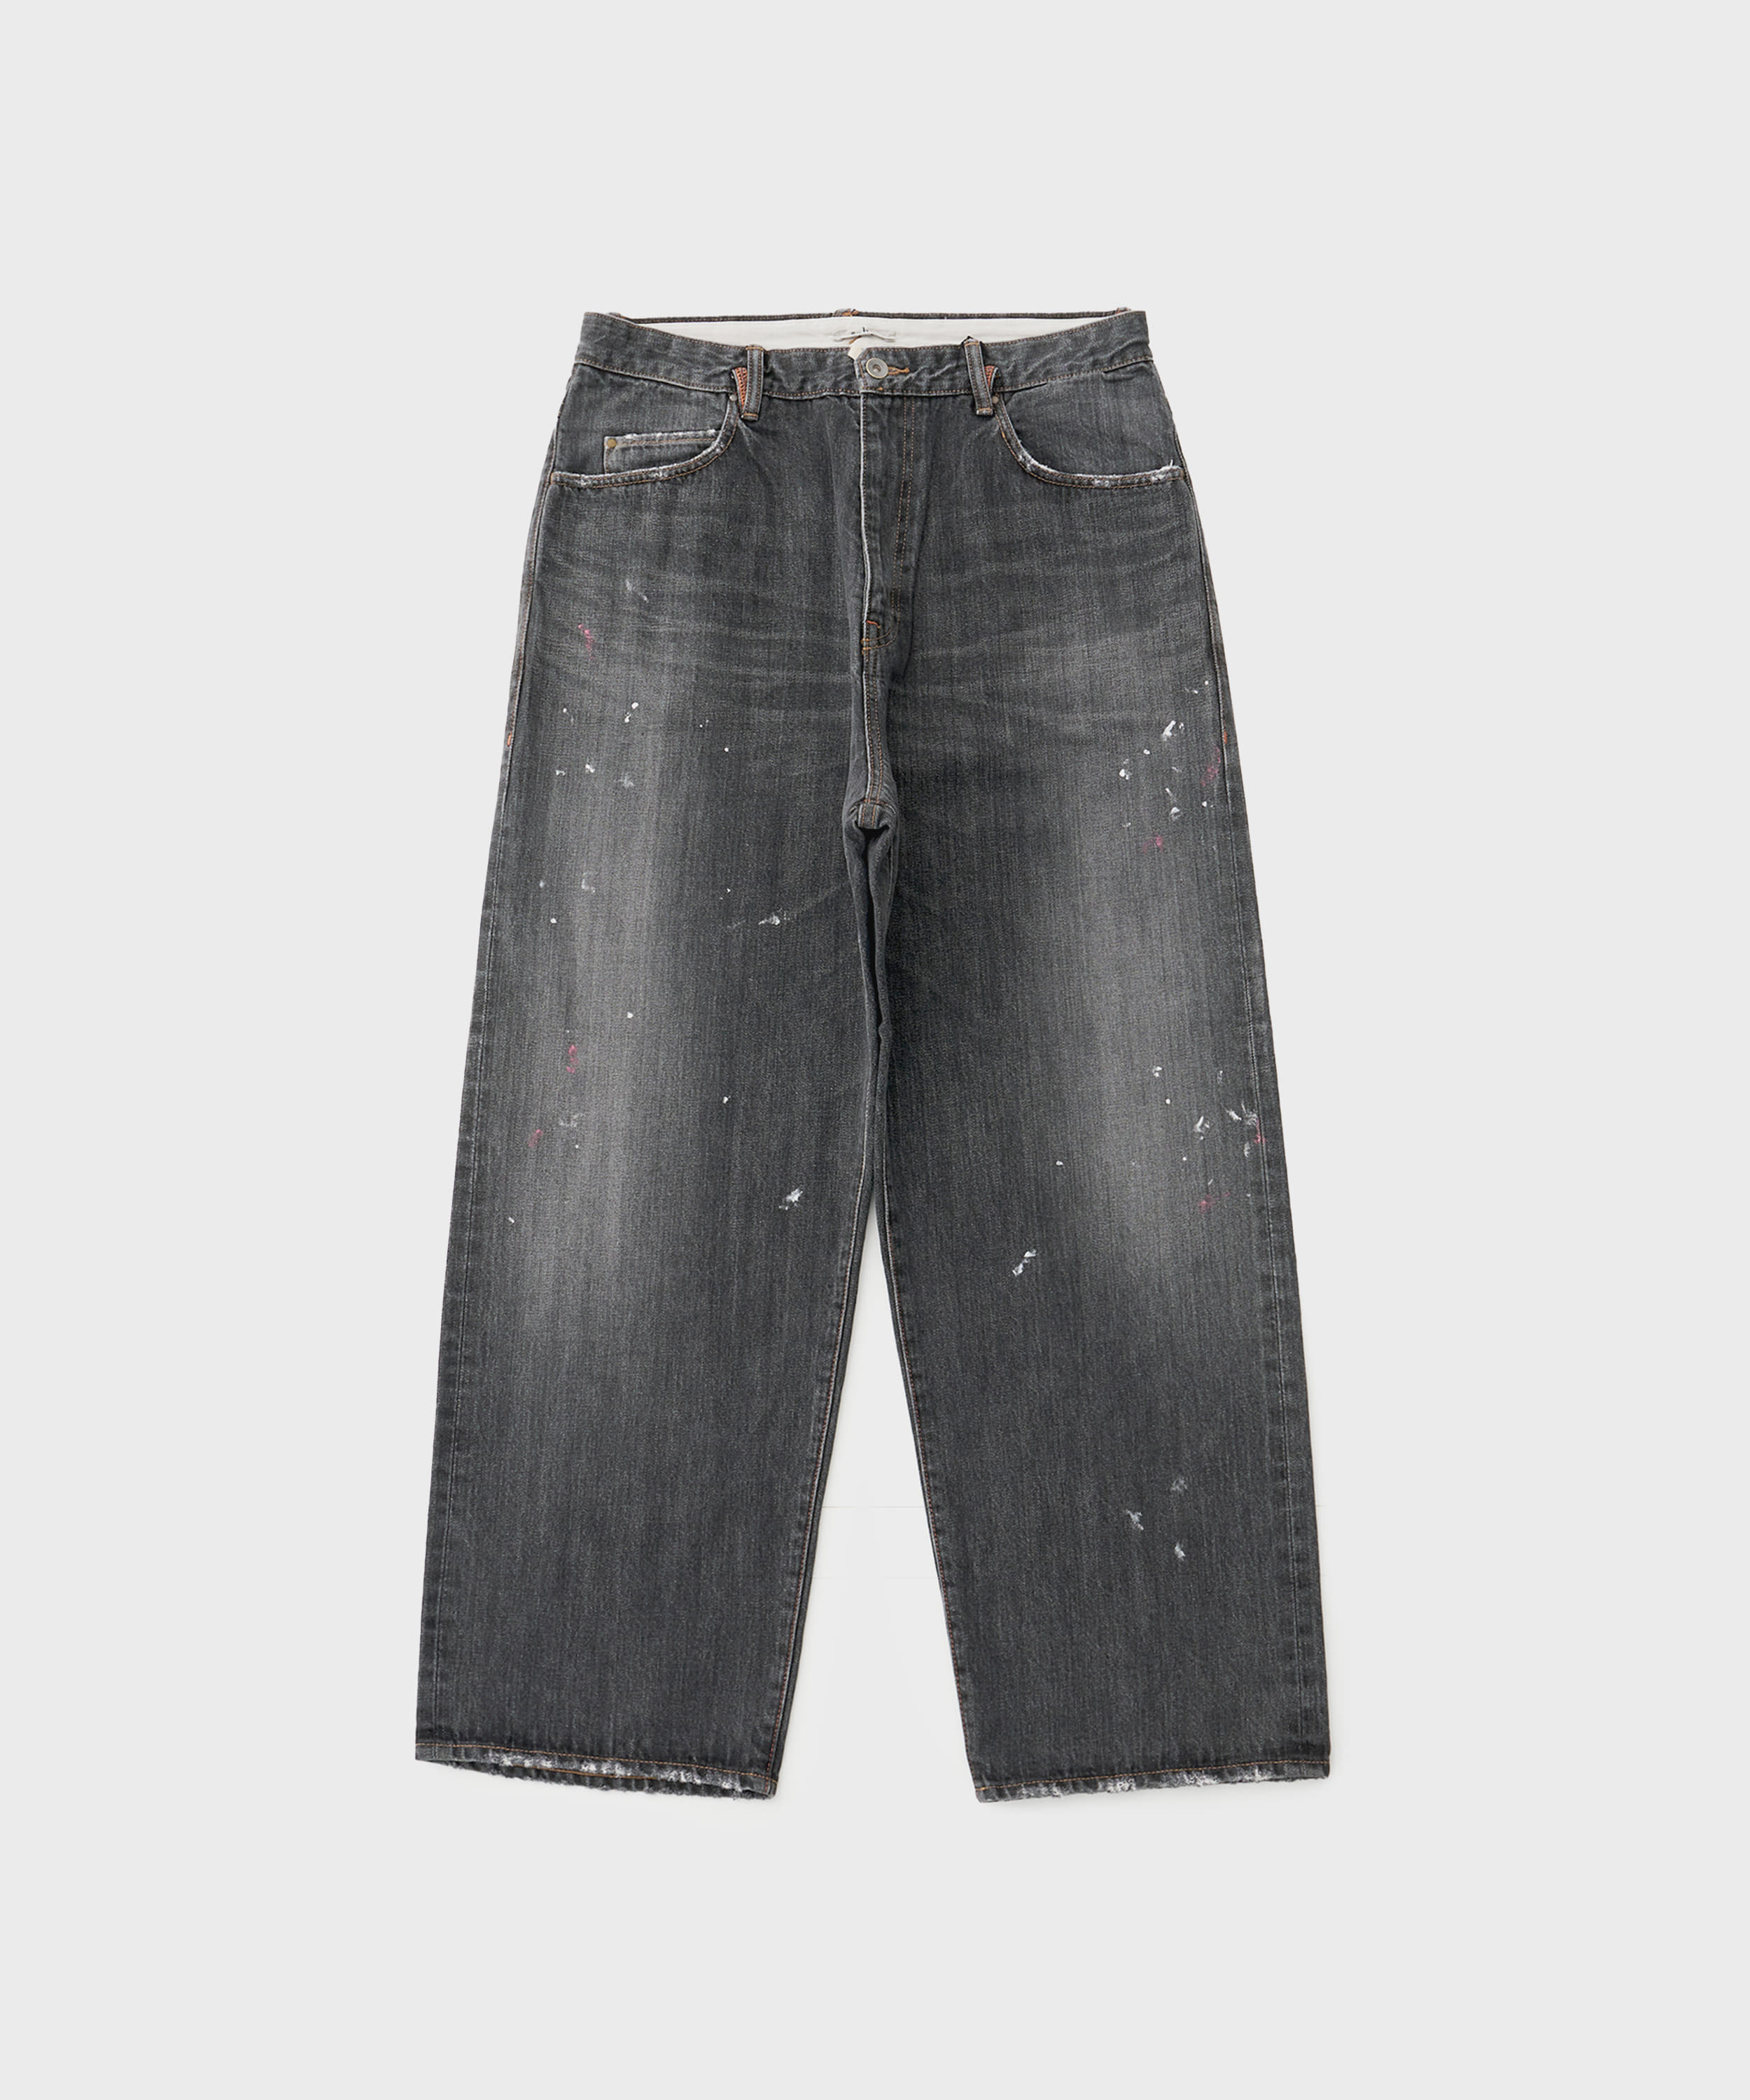 Kamata Denim Trousers Type 1 Vintage (Black)